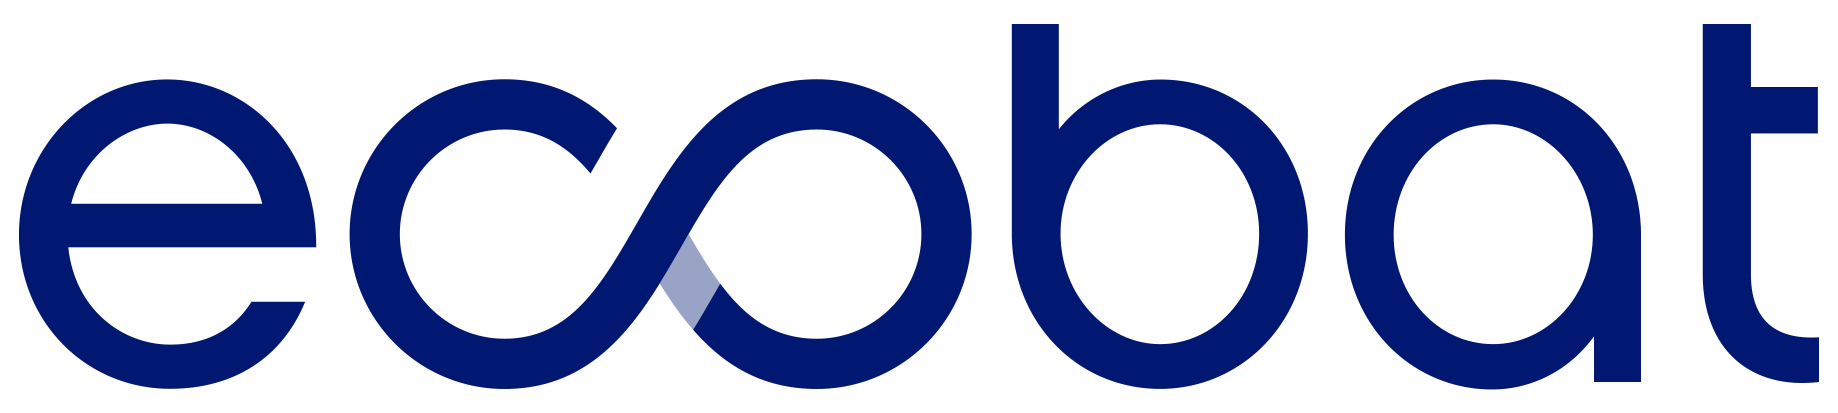 Approved Logo for 01.29 PR - Ecobat-Logo-Blue-RGB.png